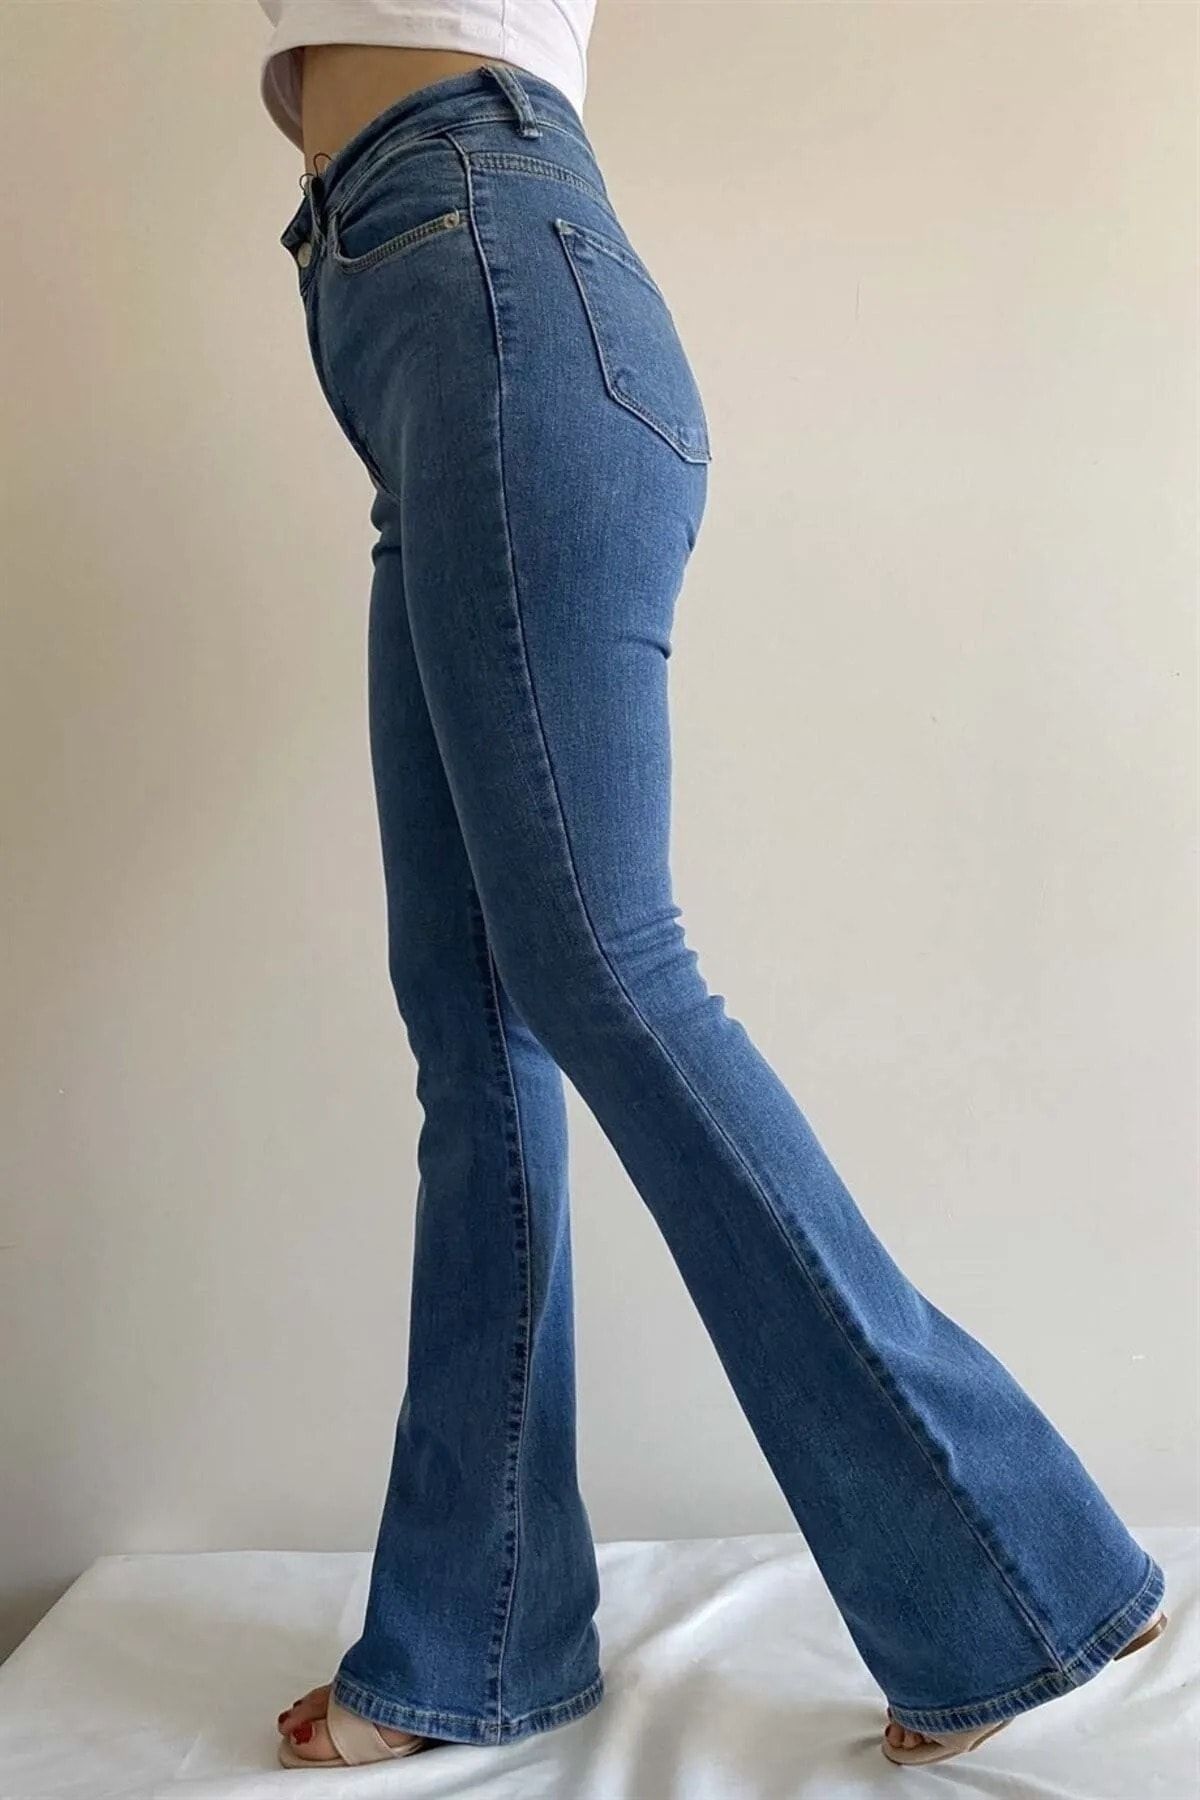 Calça Jeans Feminina Point Com Lycra - Zálix Moda